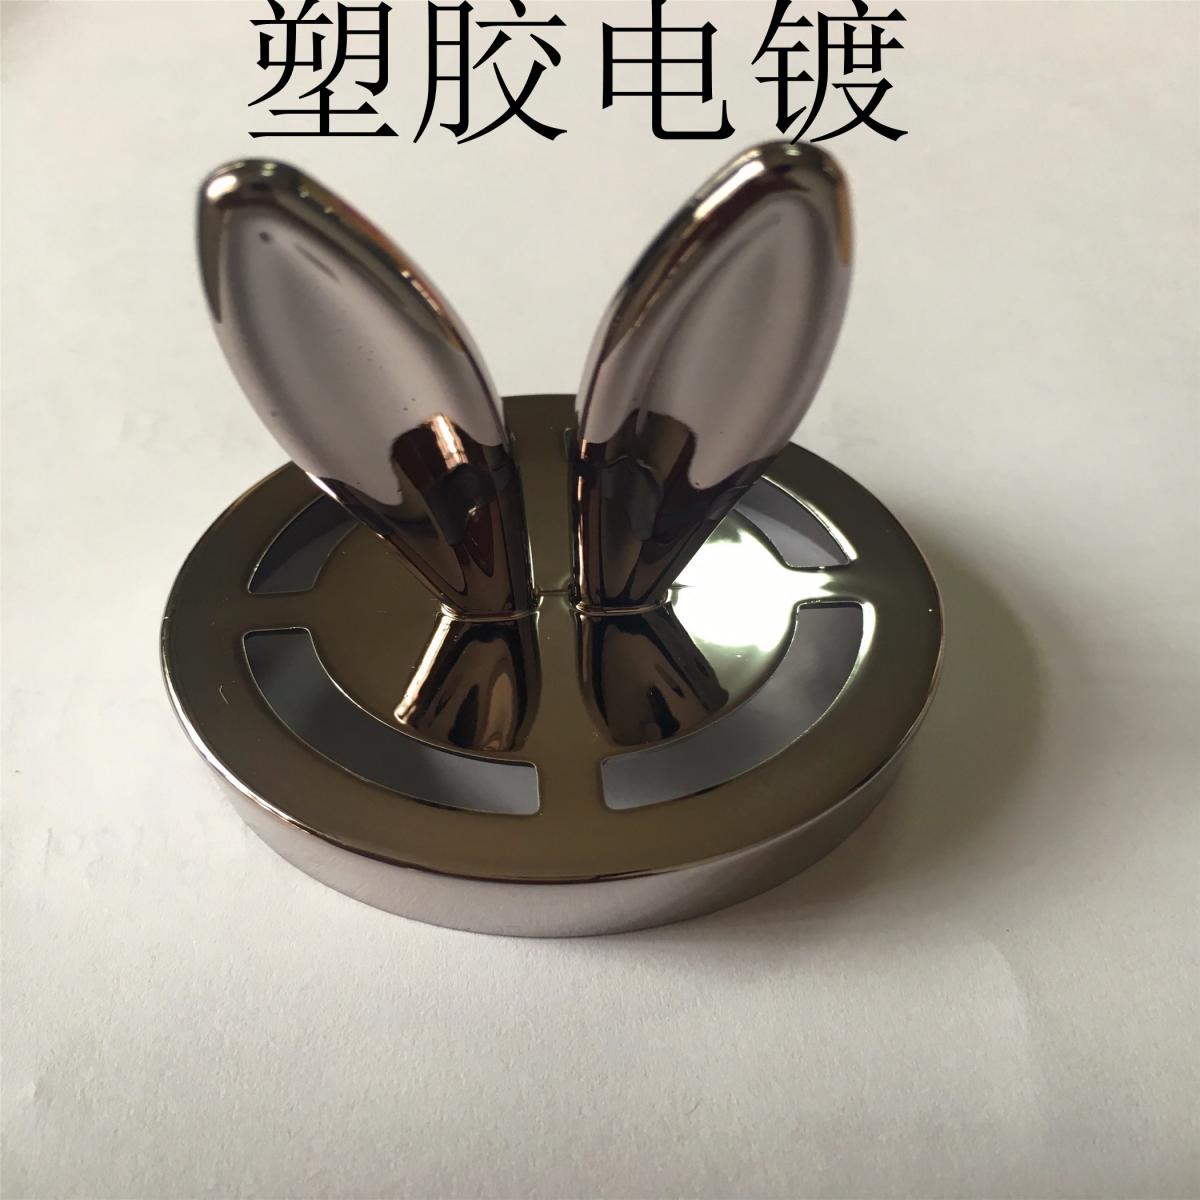 深圳东莞惠州塑胶真空电镀加工表面处理